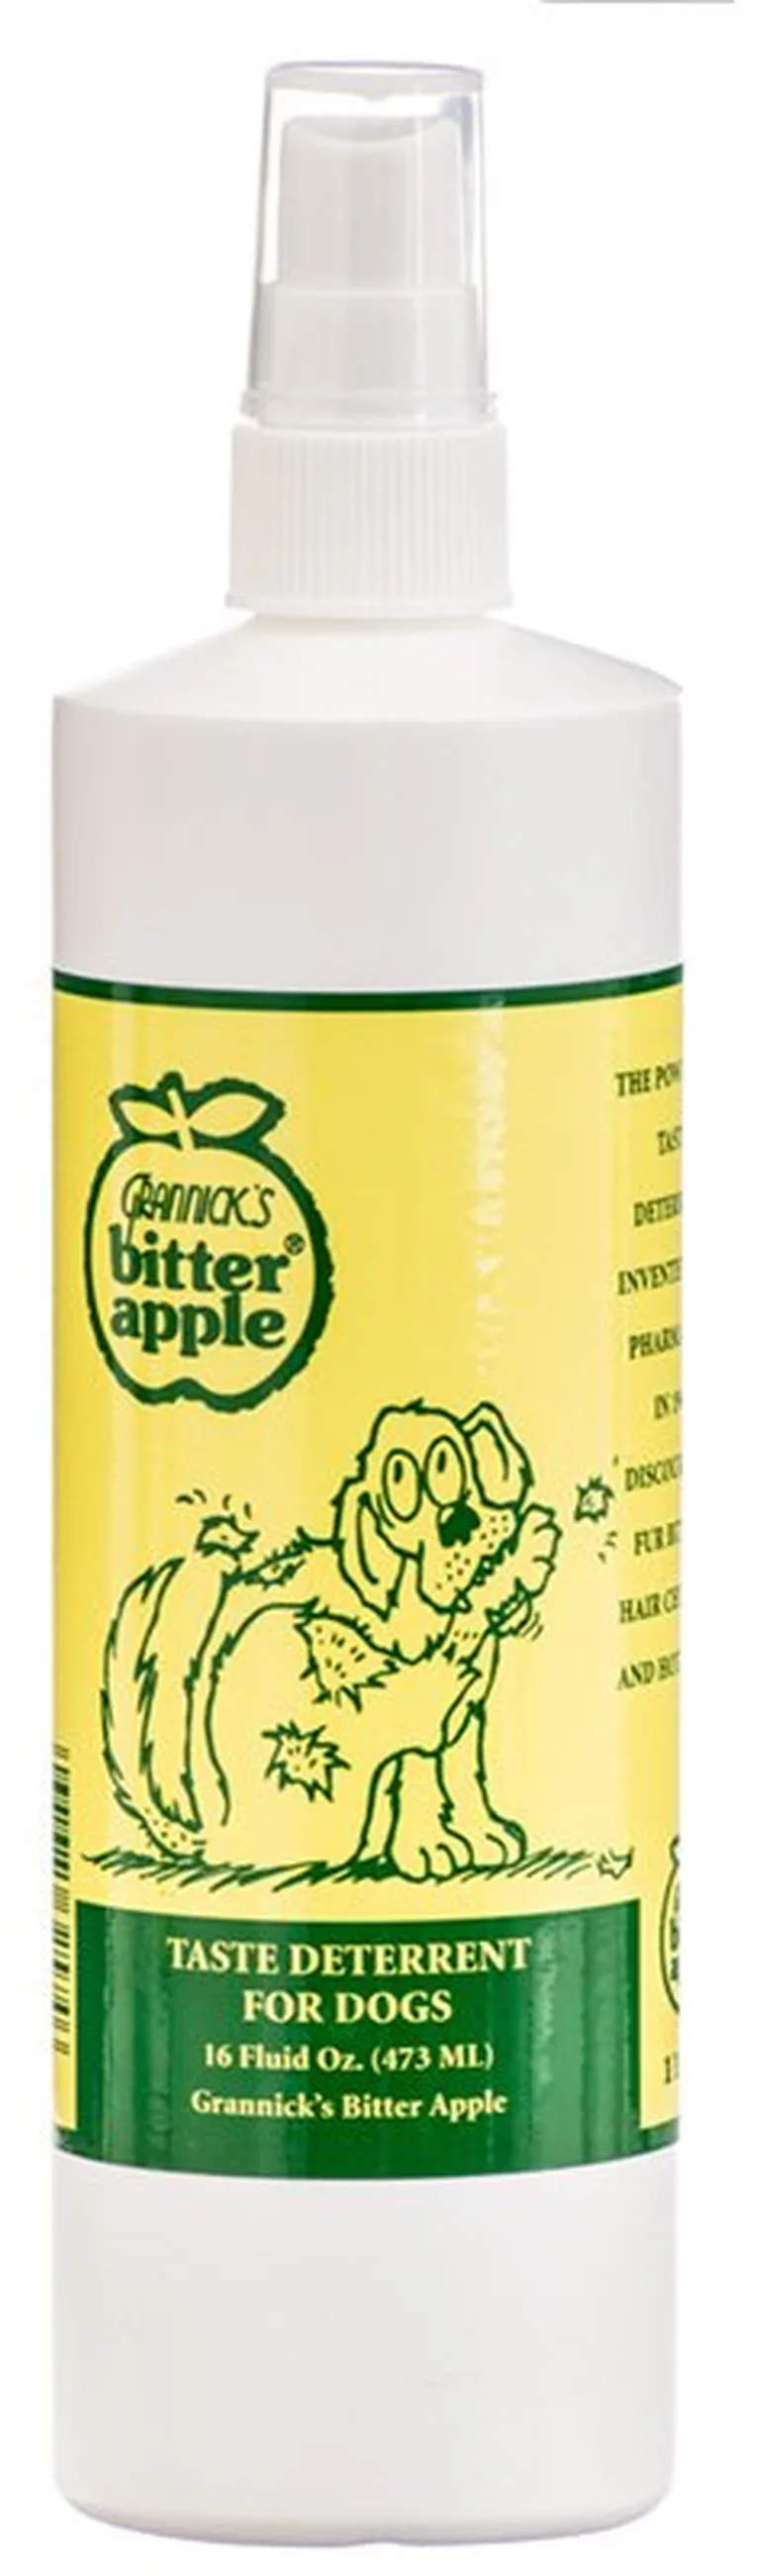 Grannicks Bitter Apple Spray for Dogs Photo 1